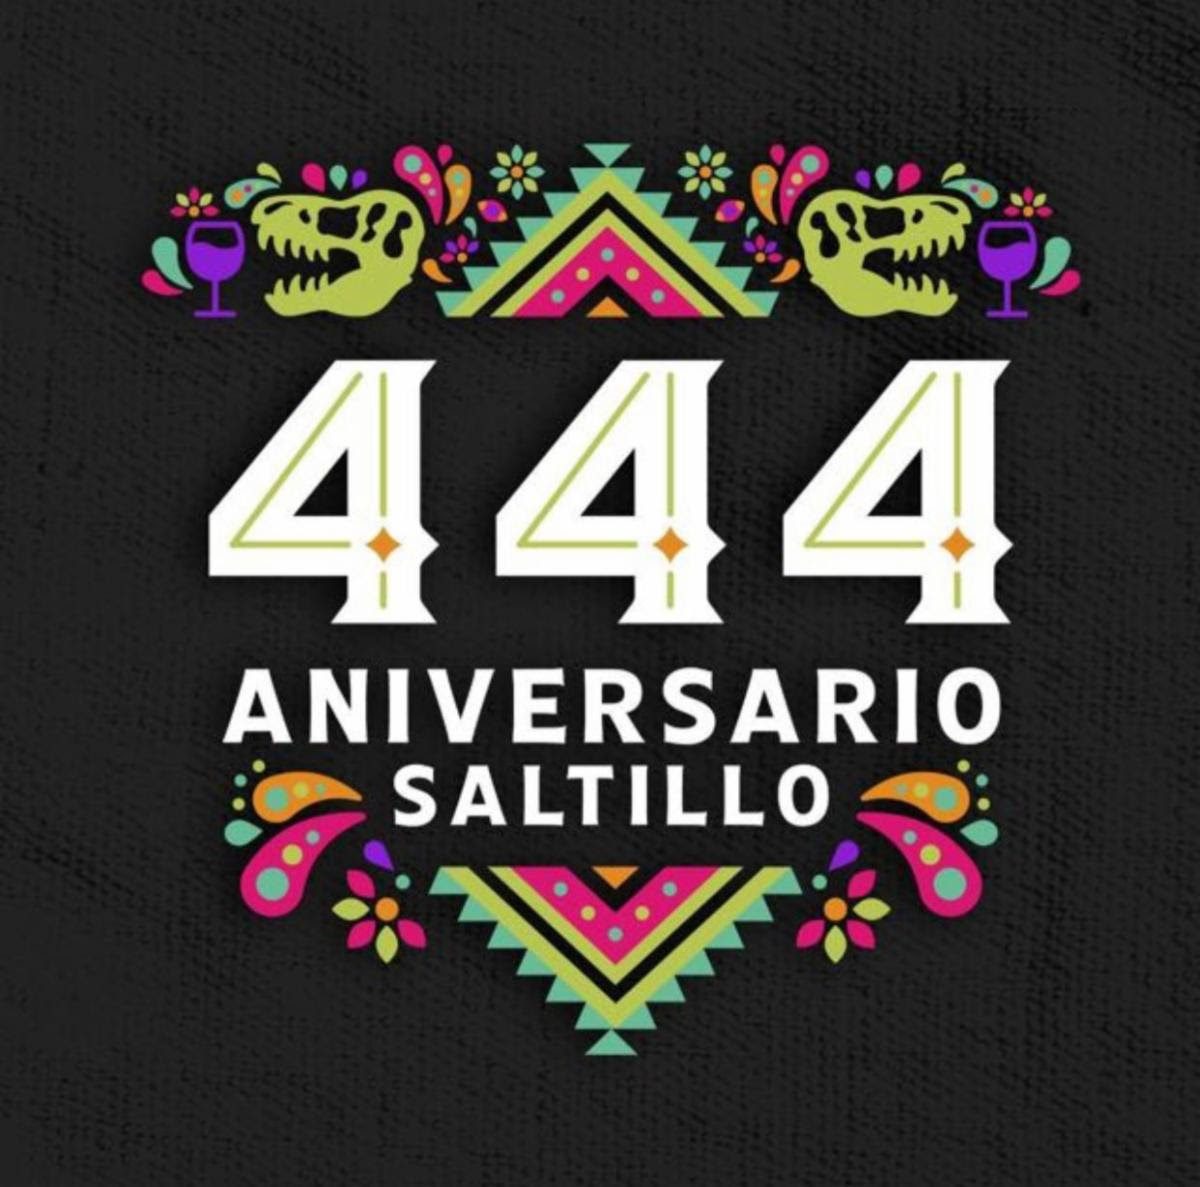 Todo listo para el Festival Internacional de Cultura por el 444 aniversario de Saltillo